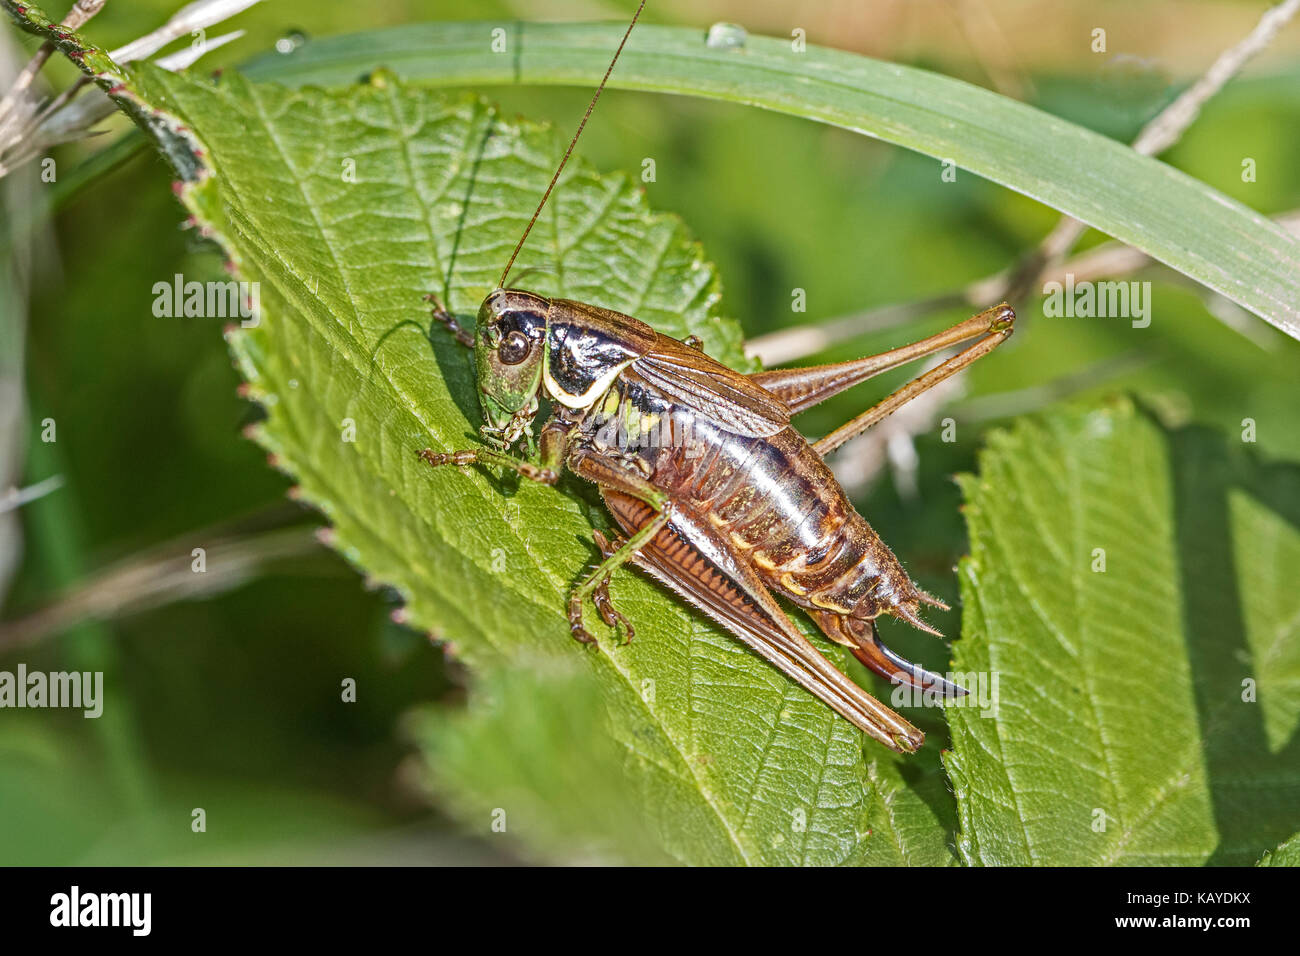 Femme roesel's bush-cricket basking on leaf Banque D'Images